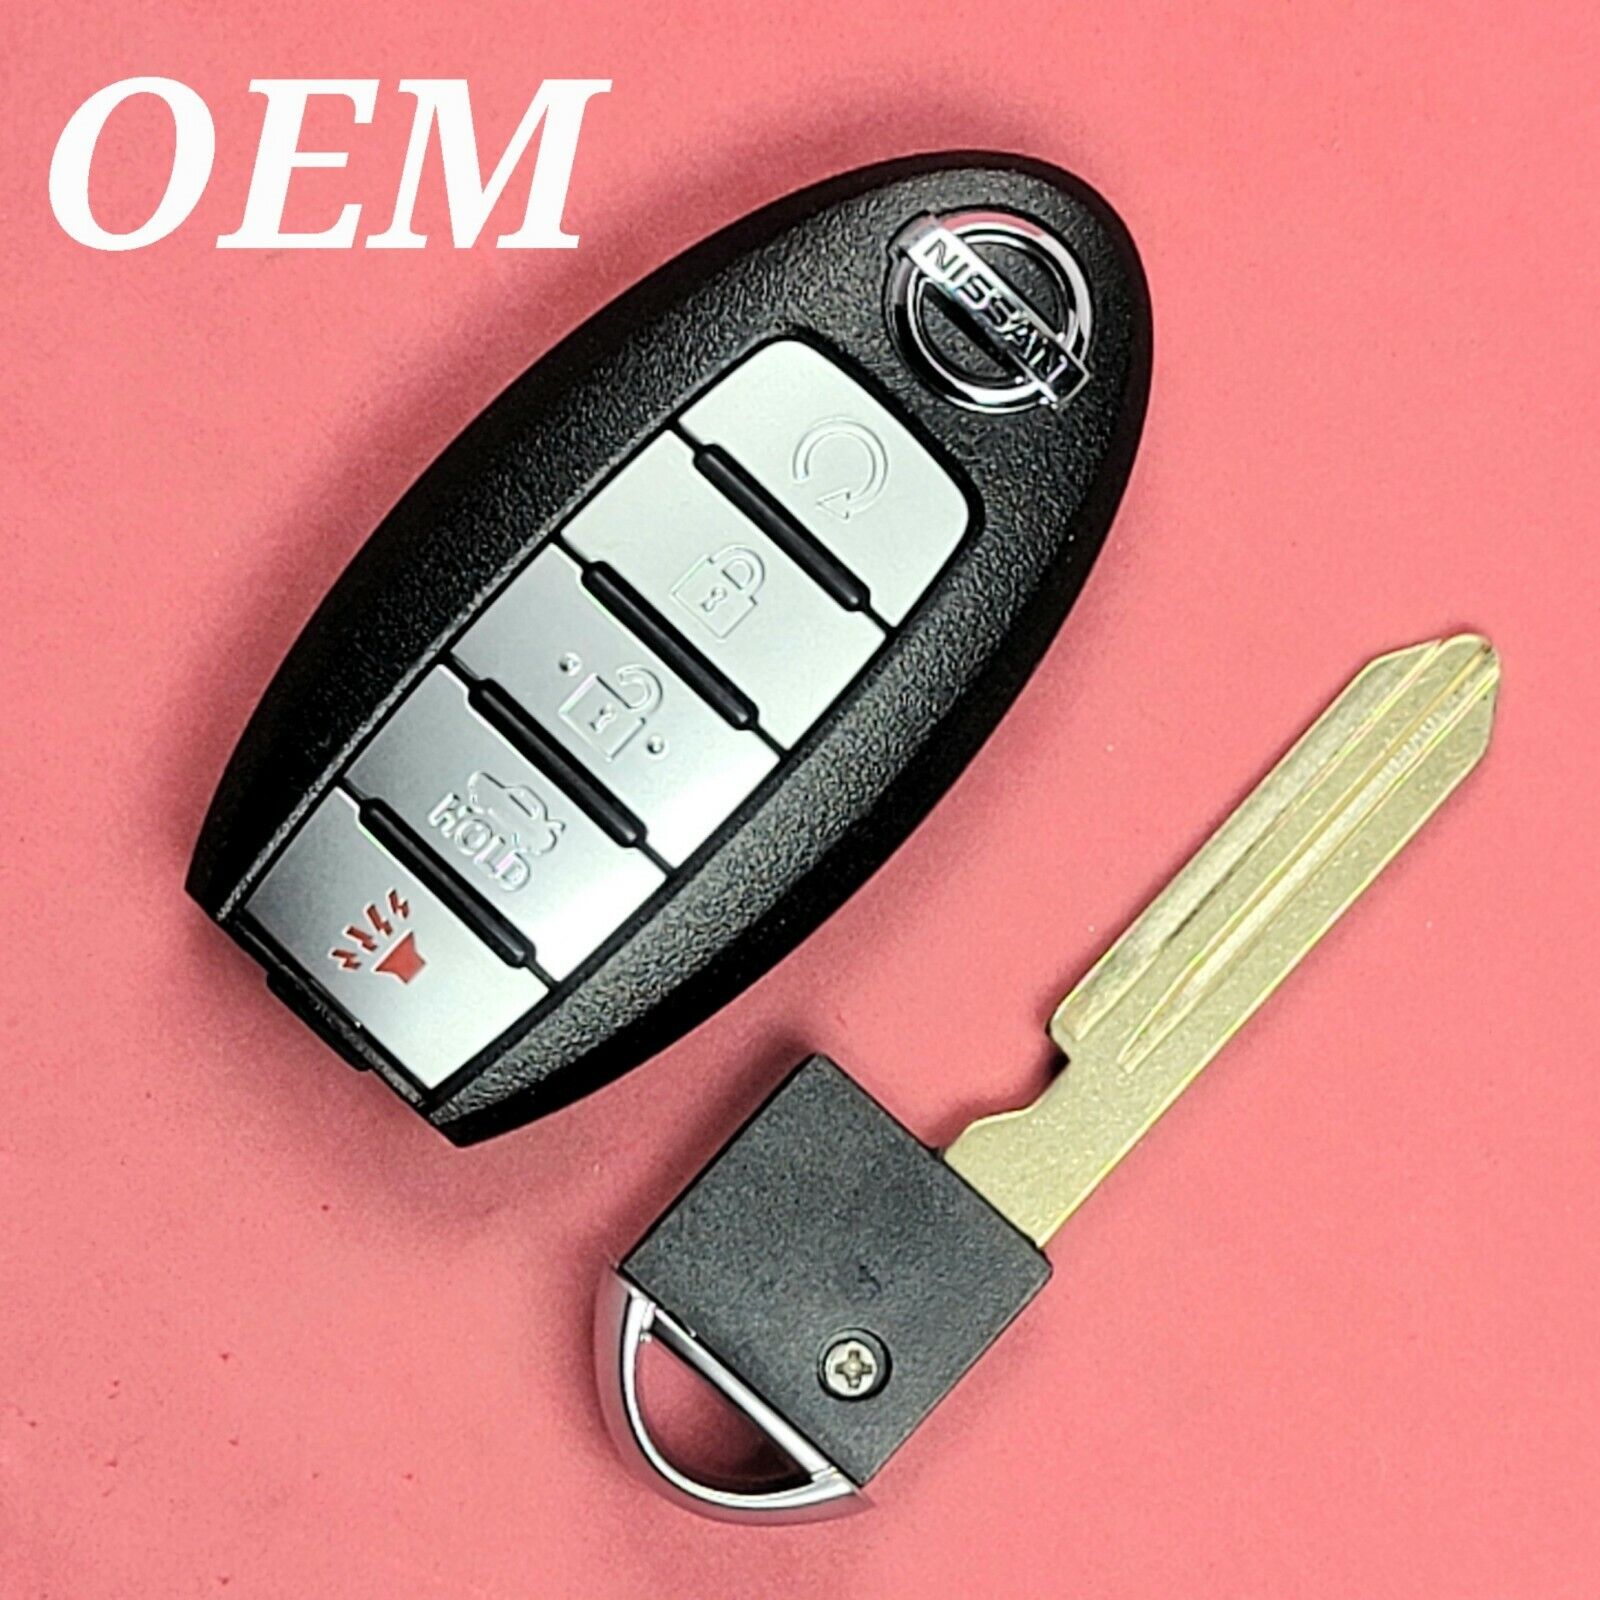 KR5S180144014 - Unlocked OEM Nissan Altima Maxima Smart Key 5B Trunk S180144310 